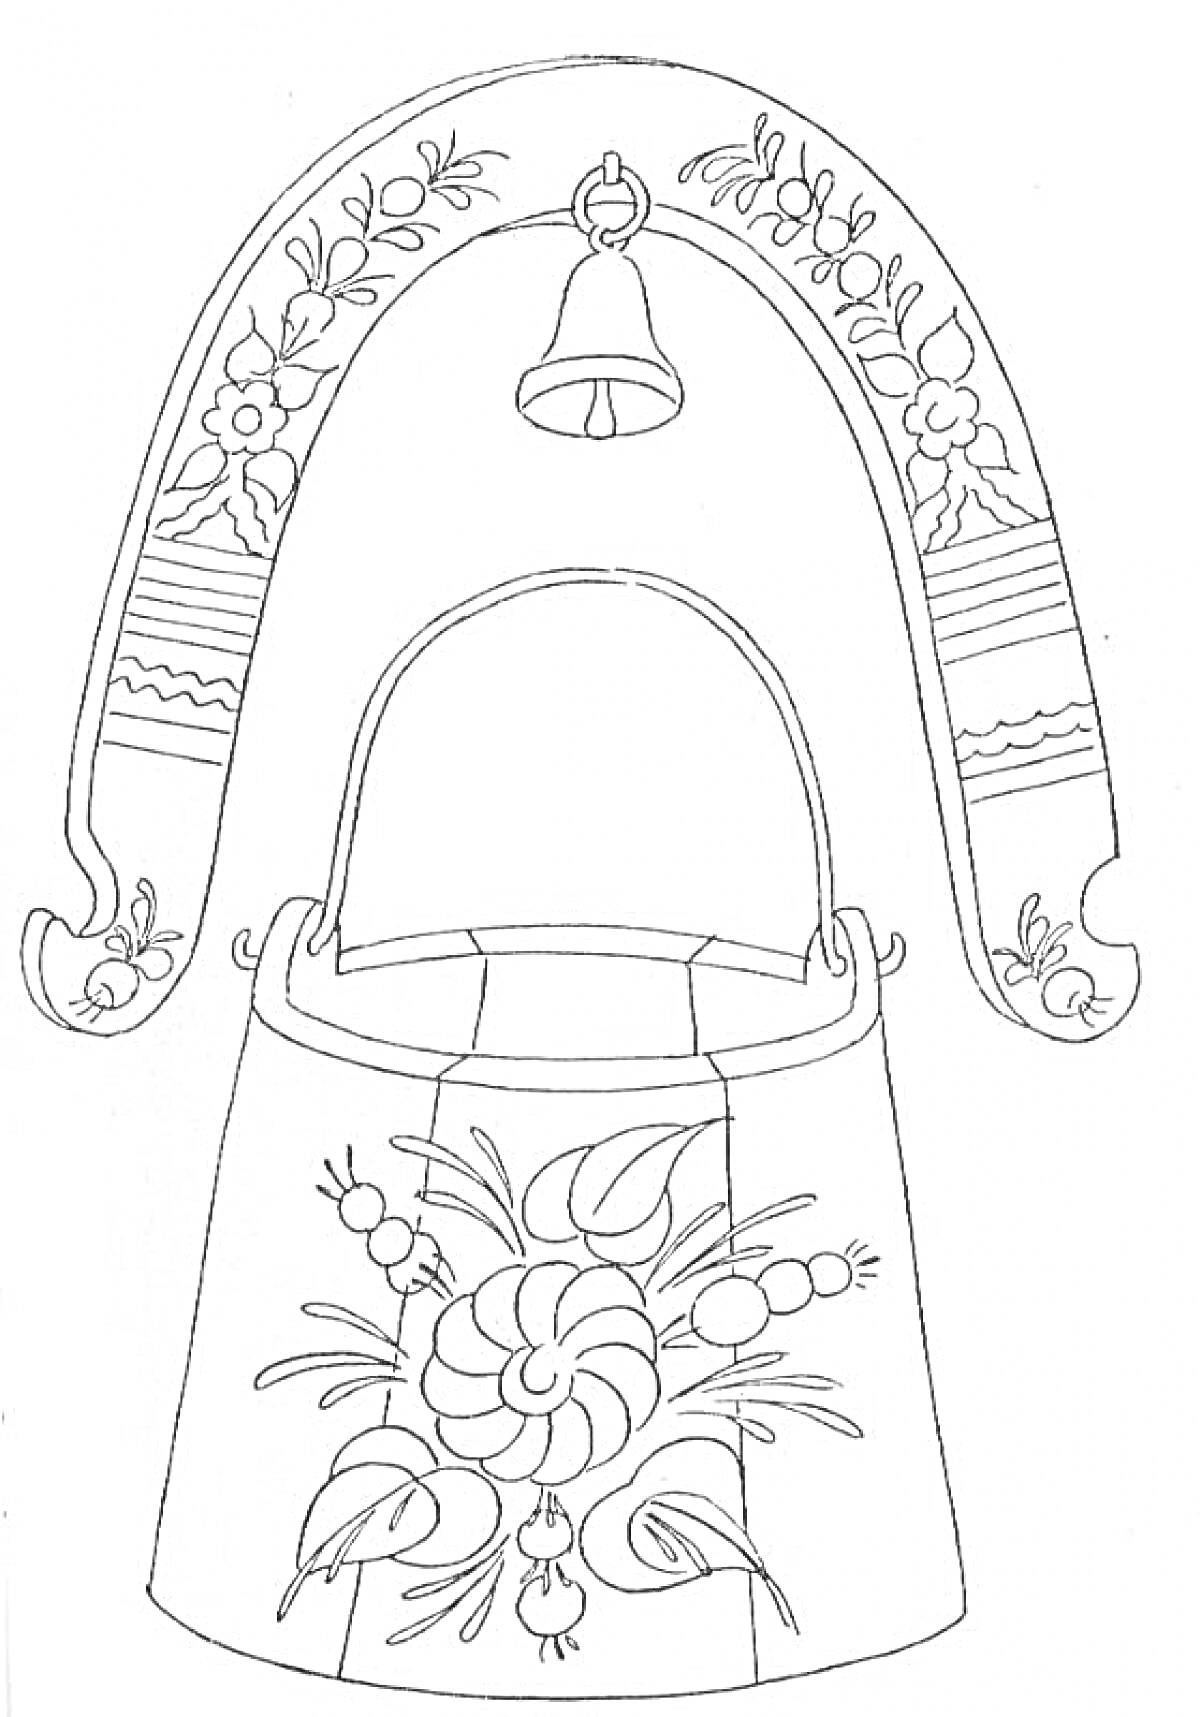 Раскраска Корзина с цветочным узором под хохлому и колокольчик на арке